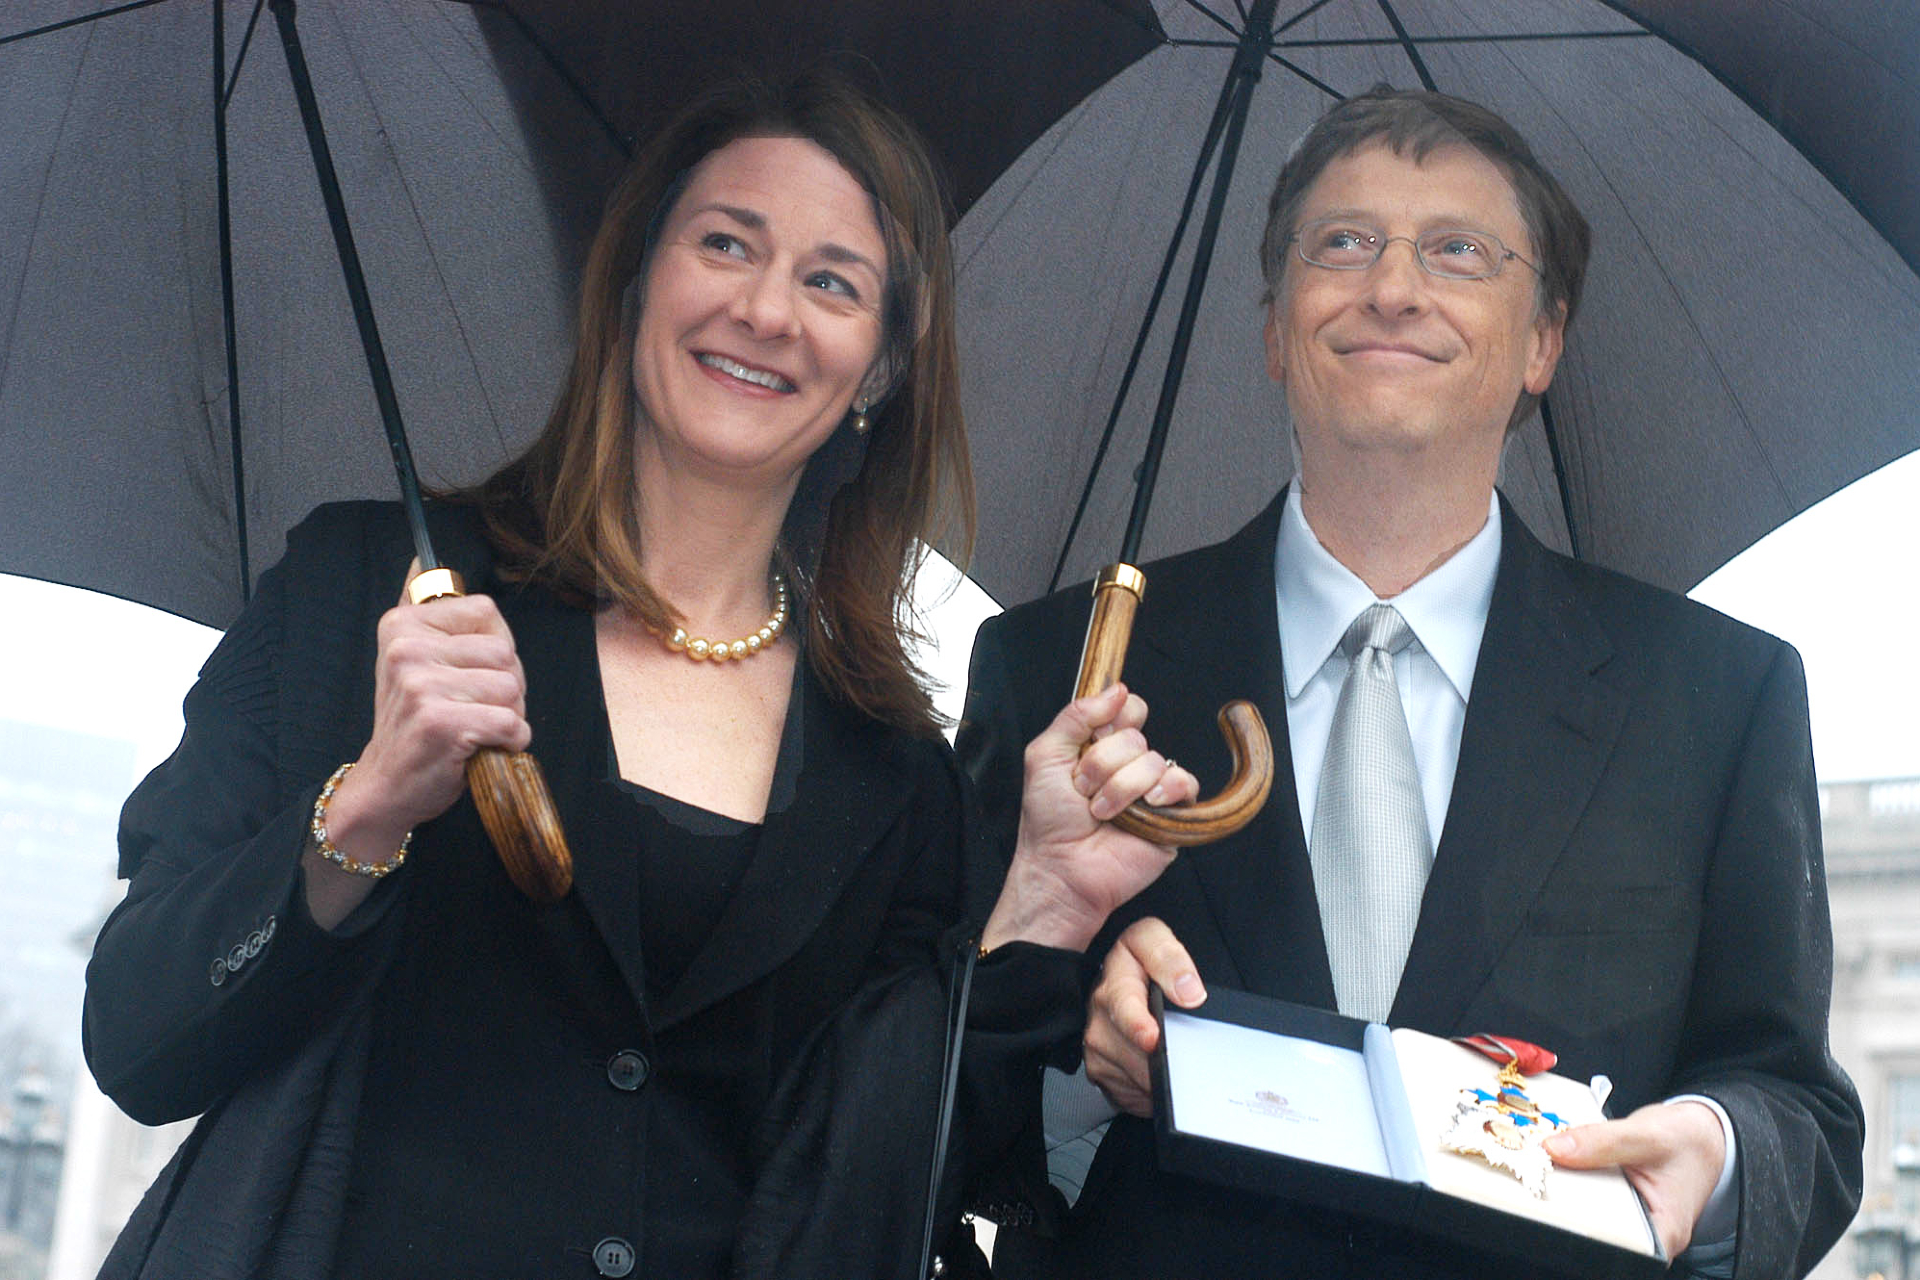 Билл и Мелинда Гейтс в Букингемском дворце в Лондоне получают награду от королевы Елизаветы II за благотворительную программу по сокращению бедности в развивающихся странах, 2005 год